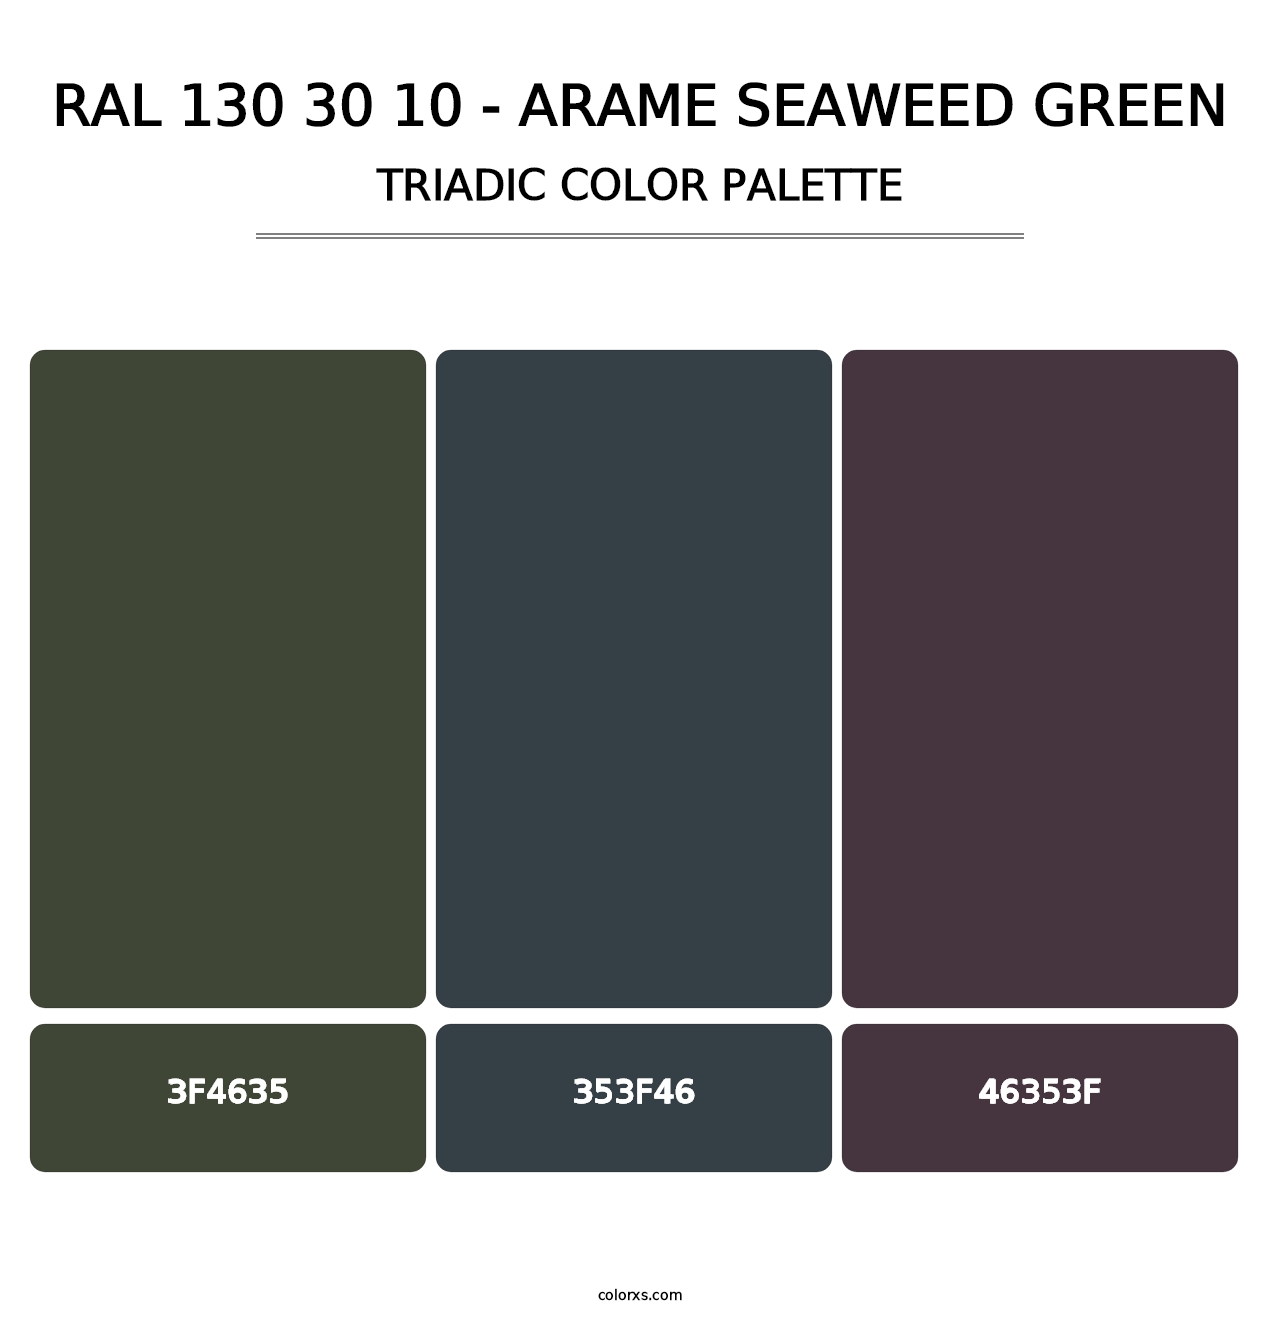 RAL 130 30 10 - Arame Seaweed Green - Triadic Color Palette